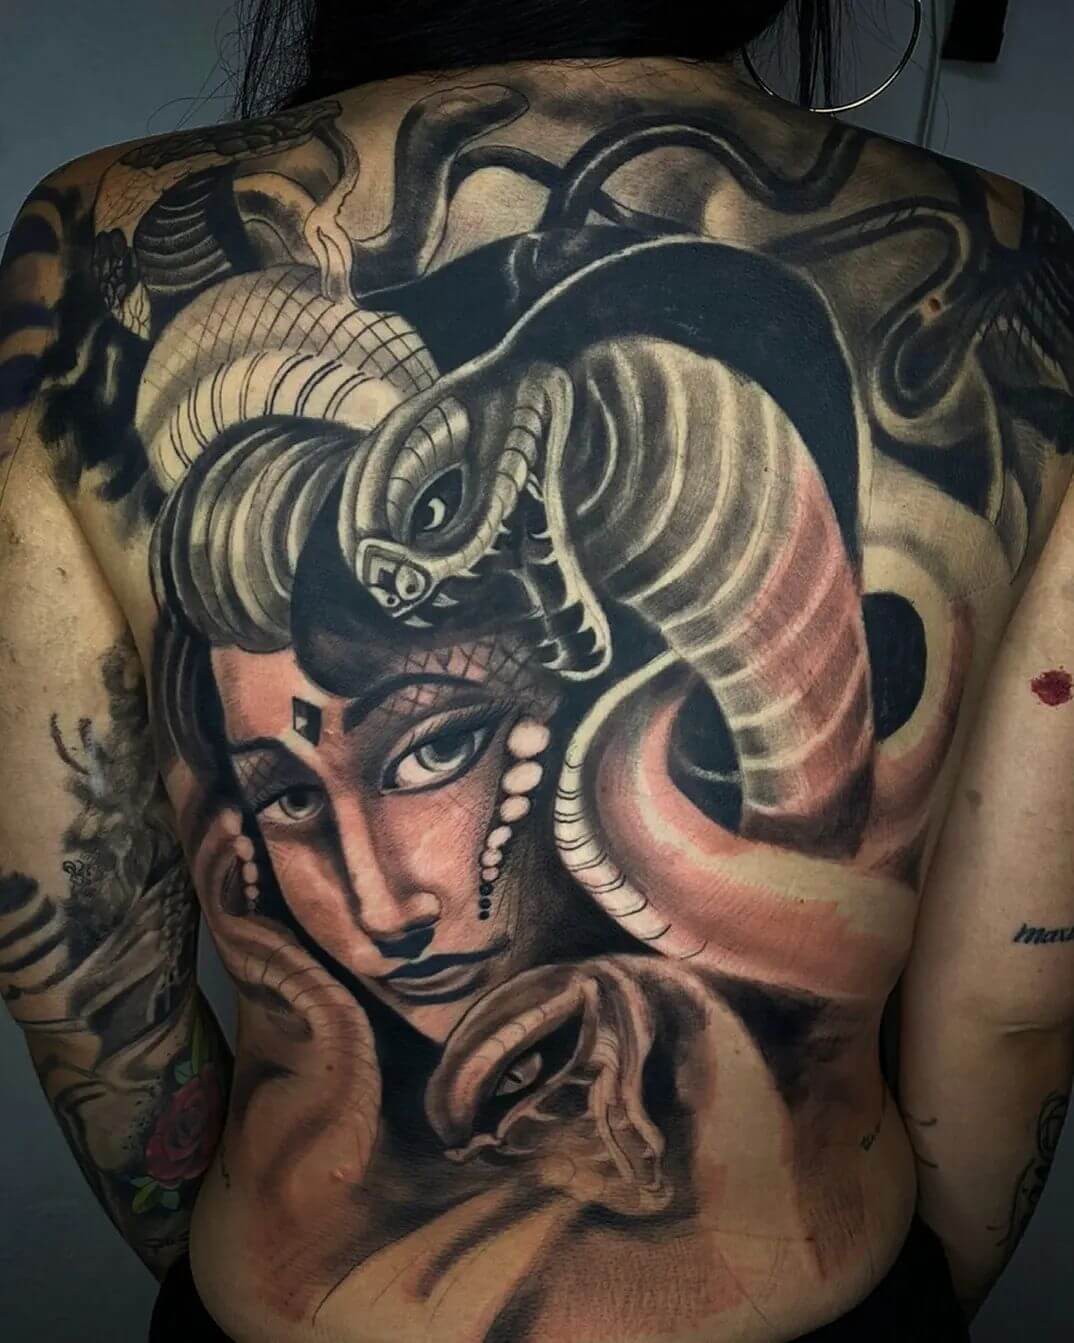 Medusa Full Body Tattoos